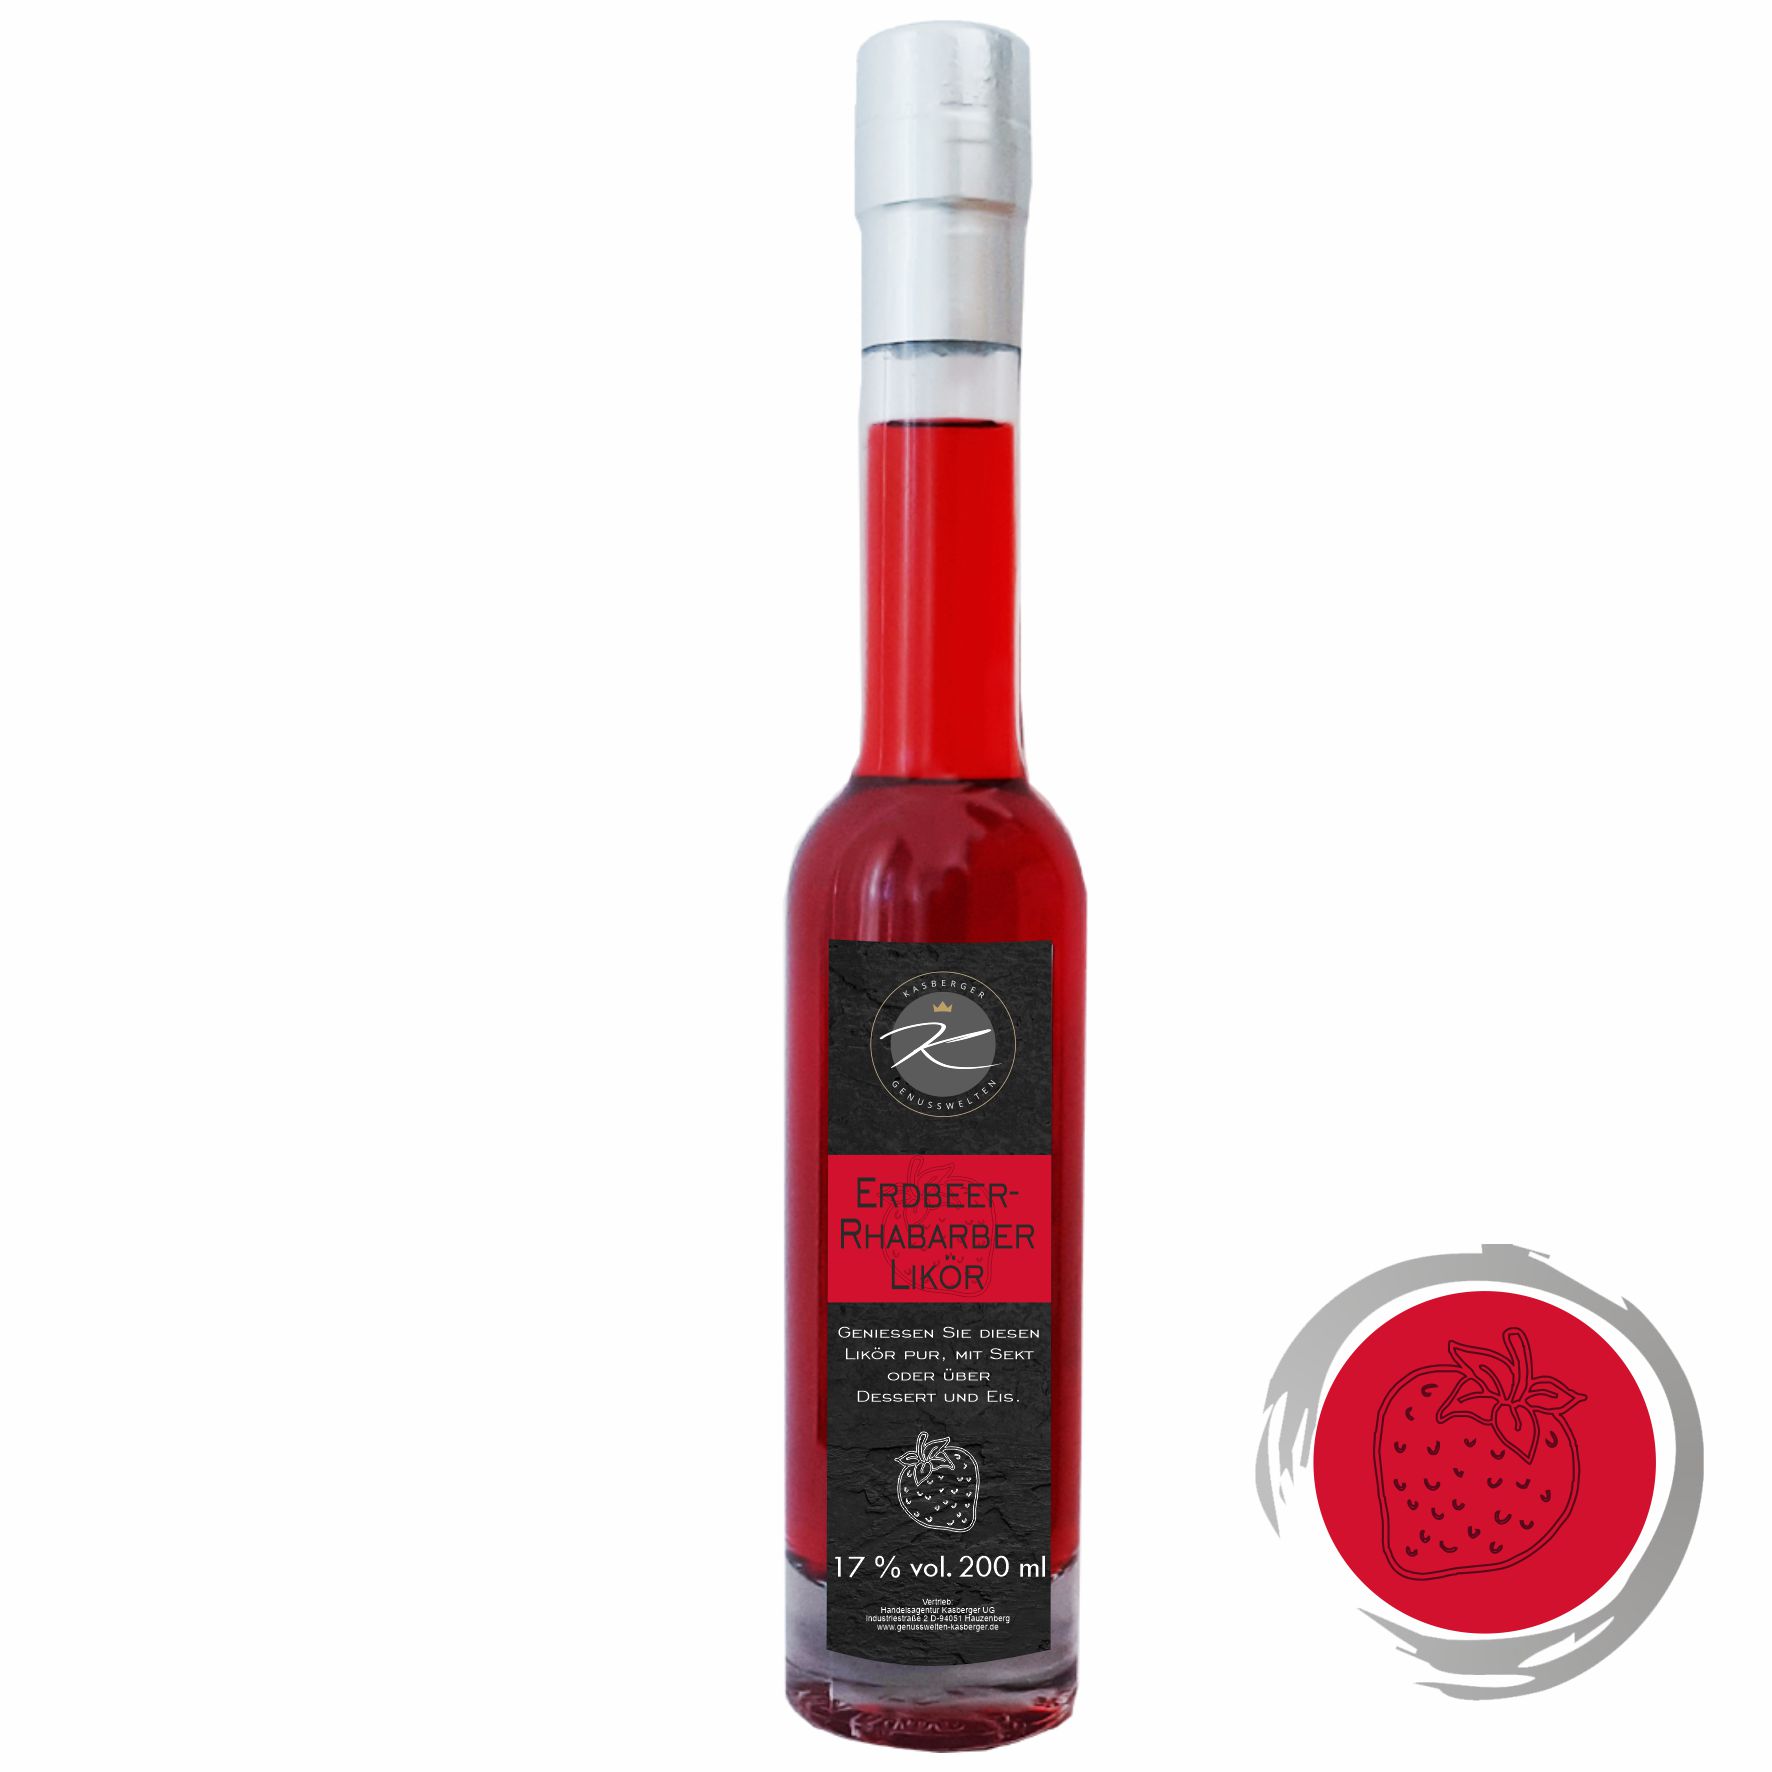 Erdbeer-Rhabarber-Likör 17 % vol (200 ml)